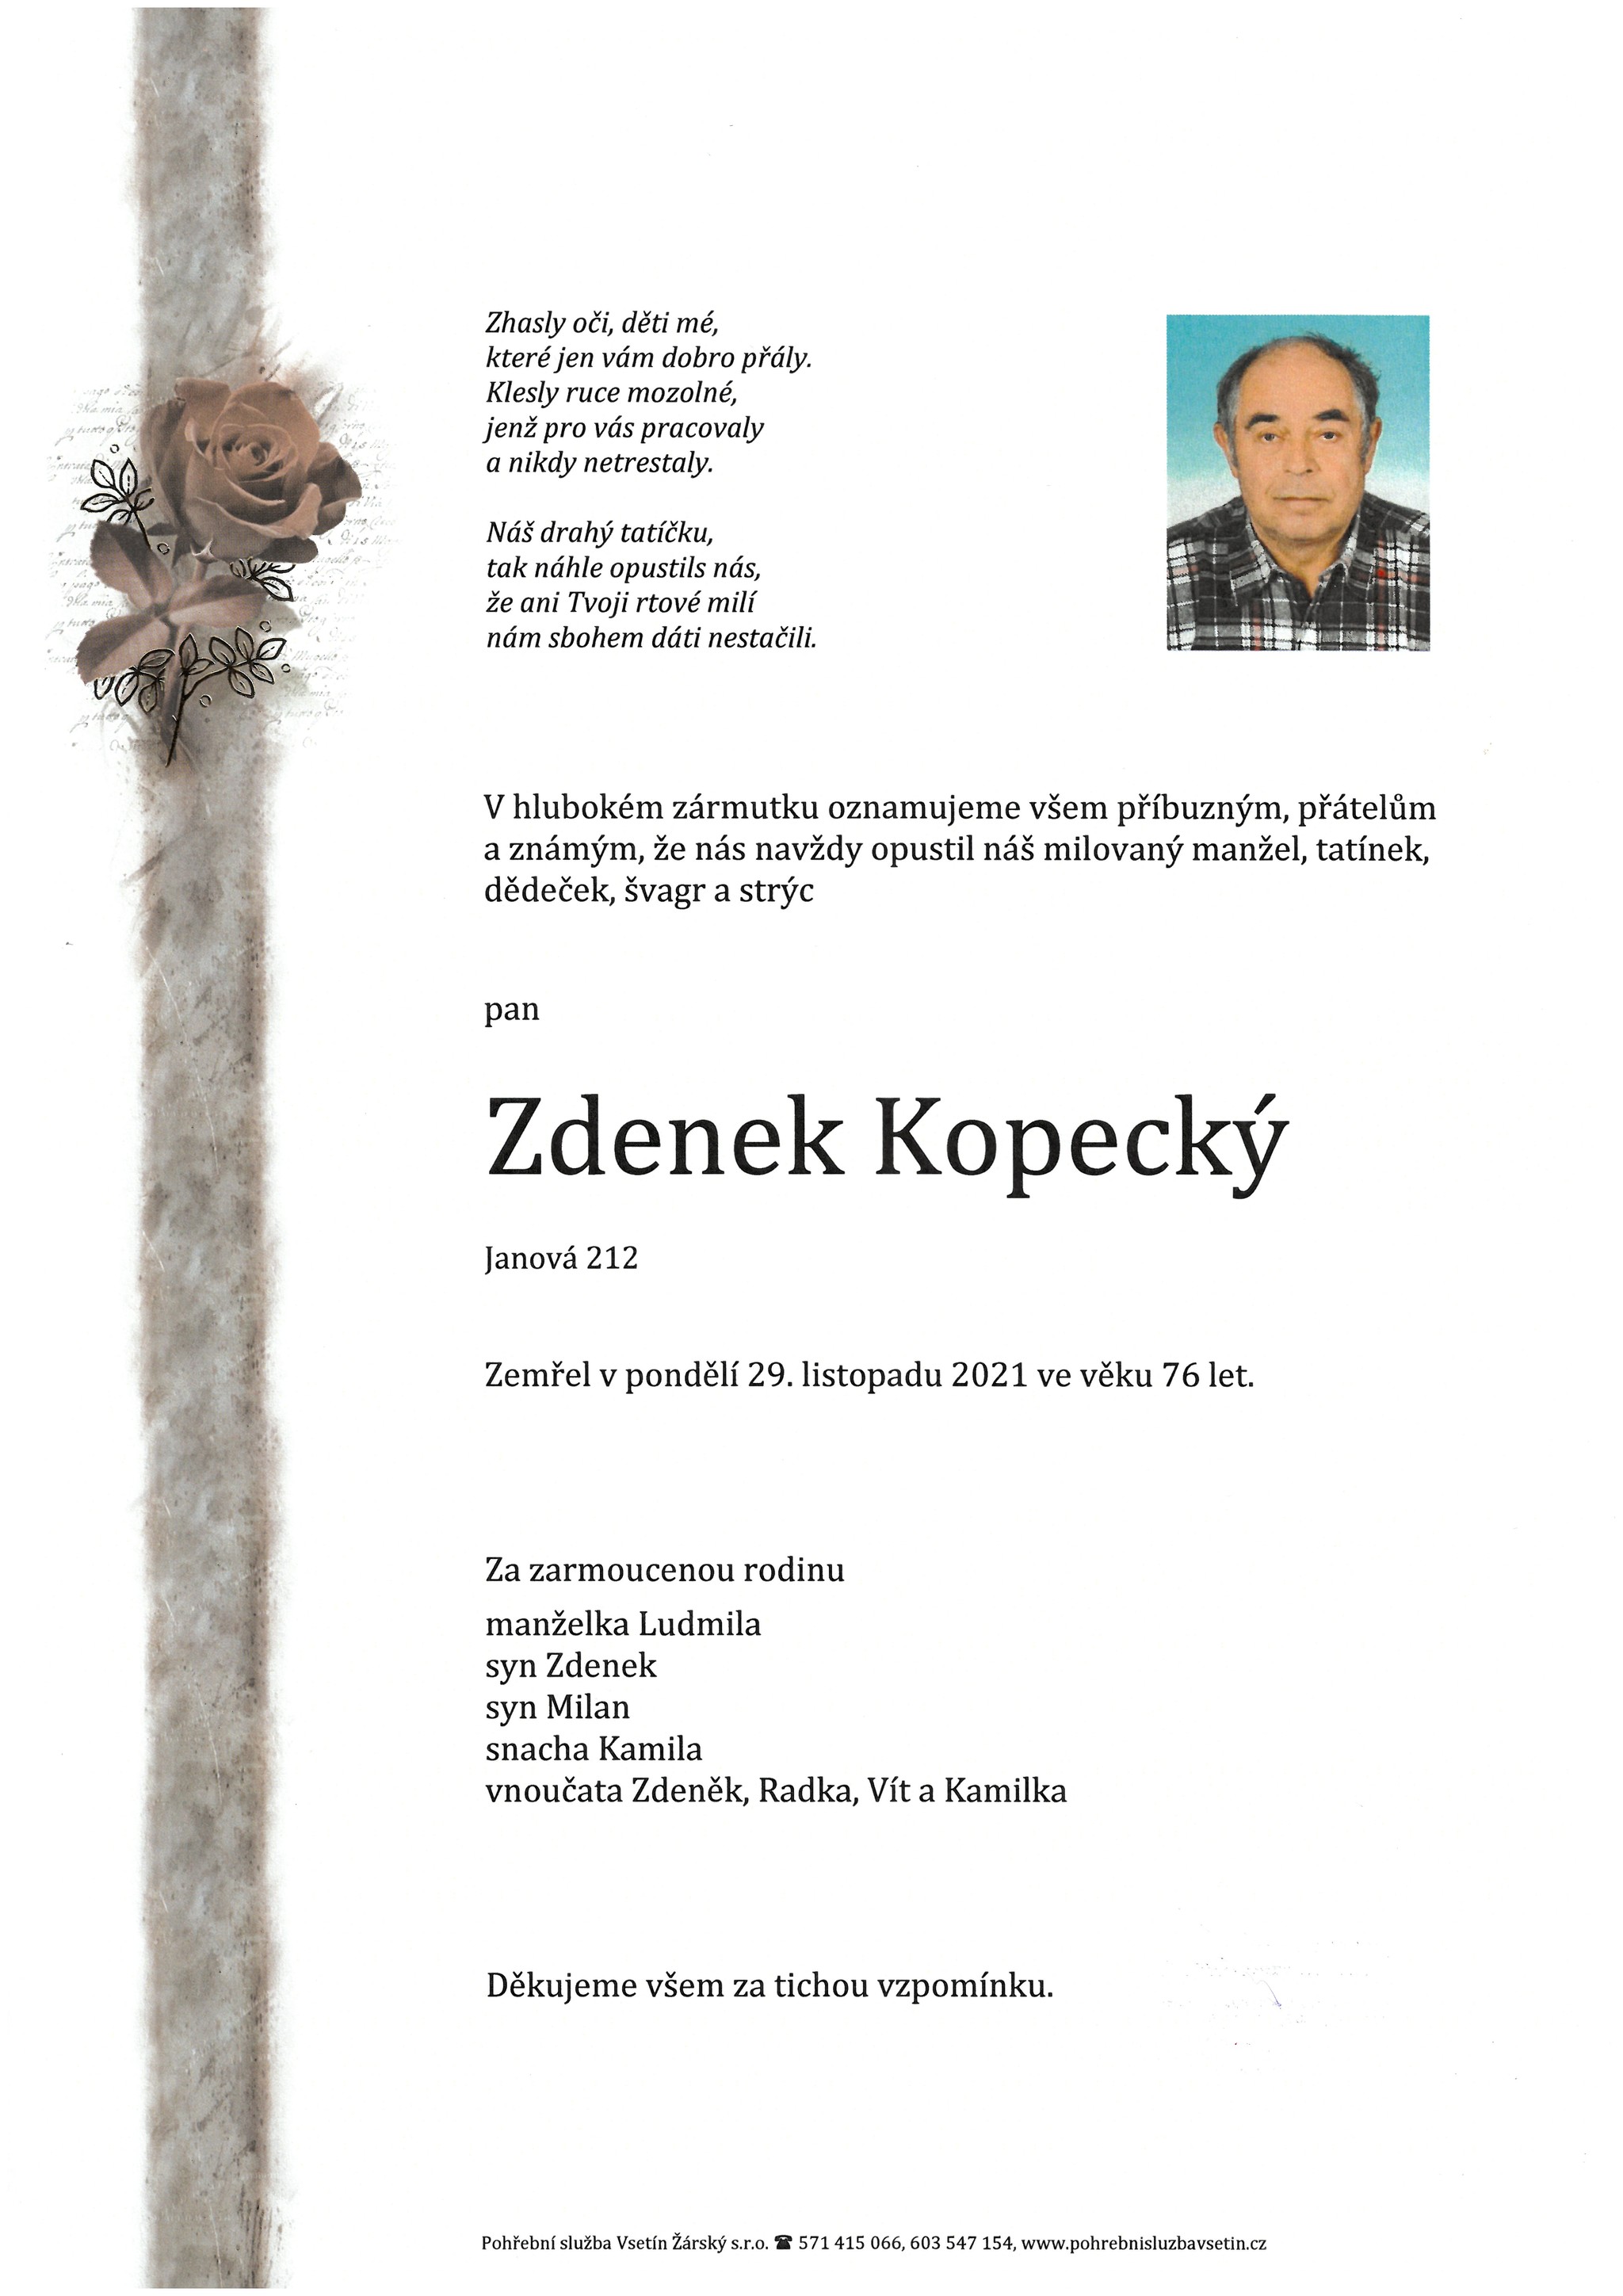 Zdenek Kopecký